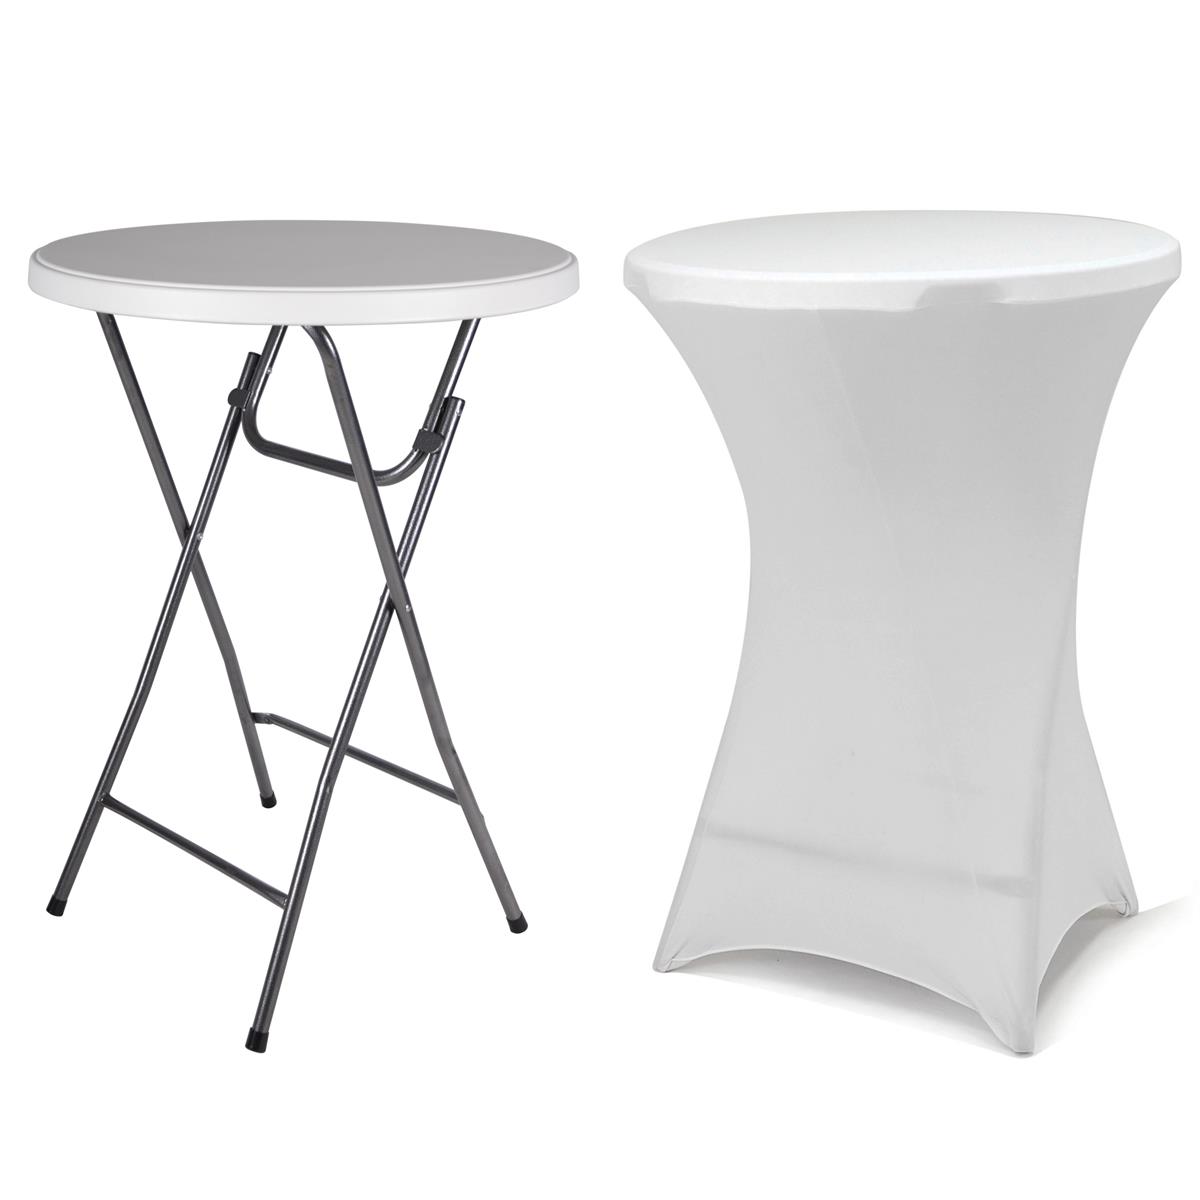 Cateringový stůl s bílým přehozem, 110 cm, sklopný bílý